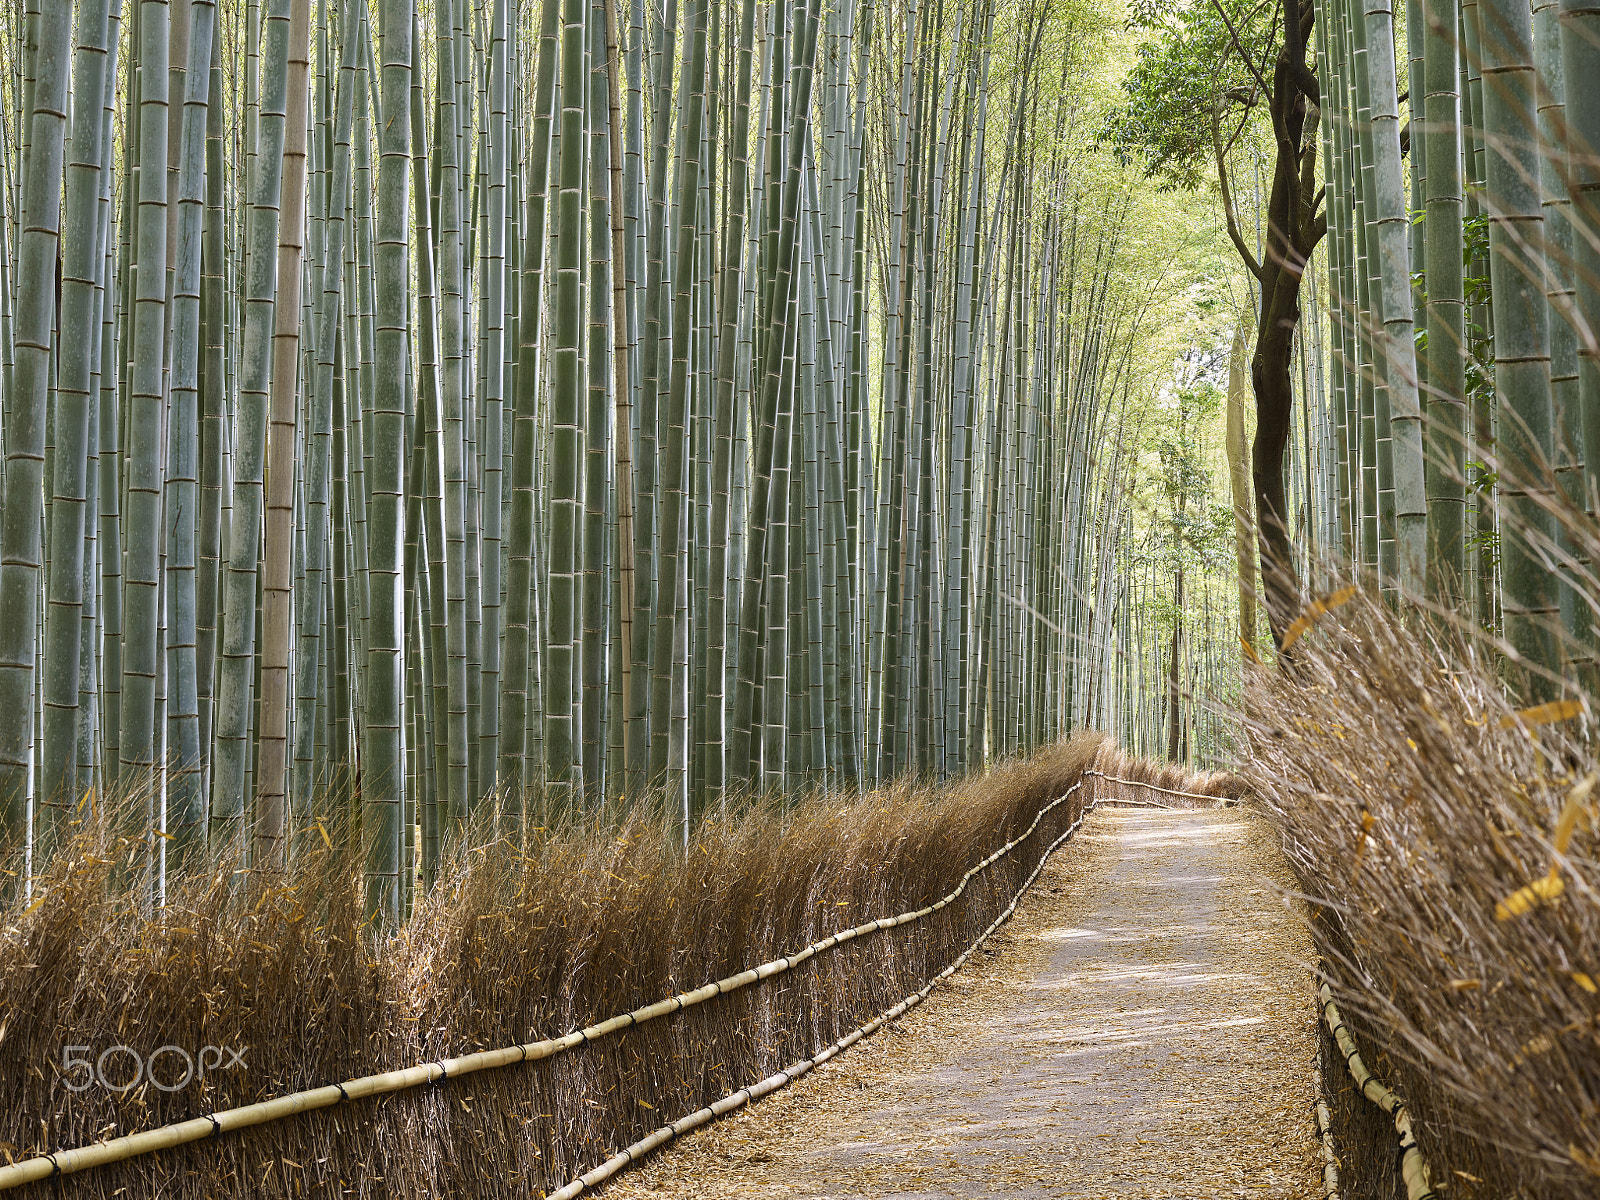 Phase One IQ250 sample photo. Arashiyama bamboo grove forest photography